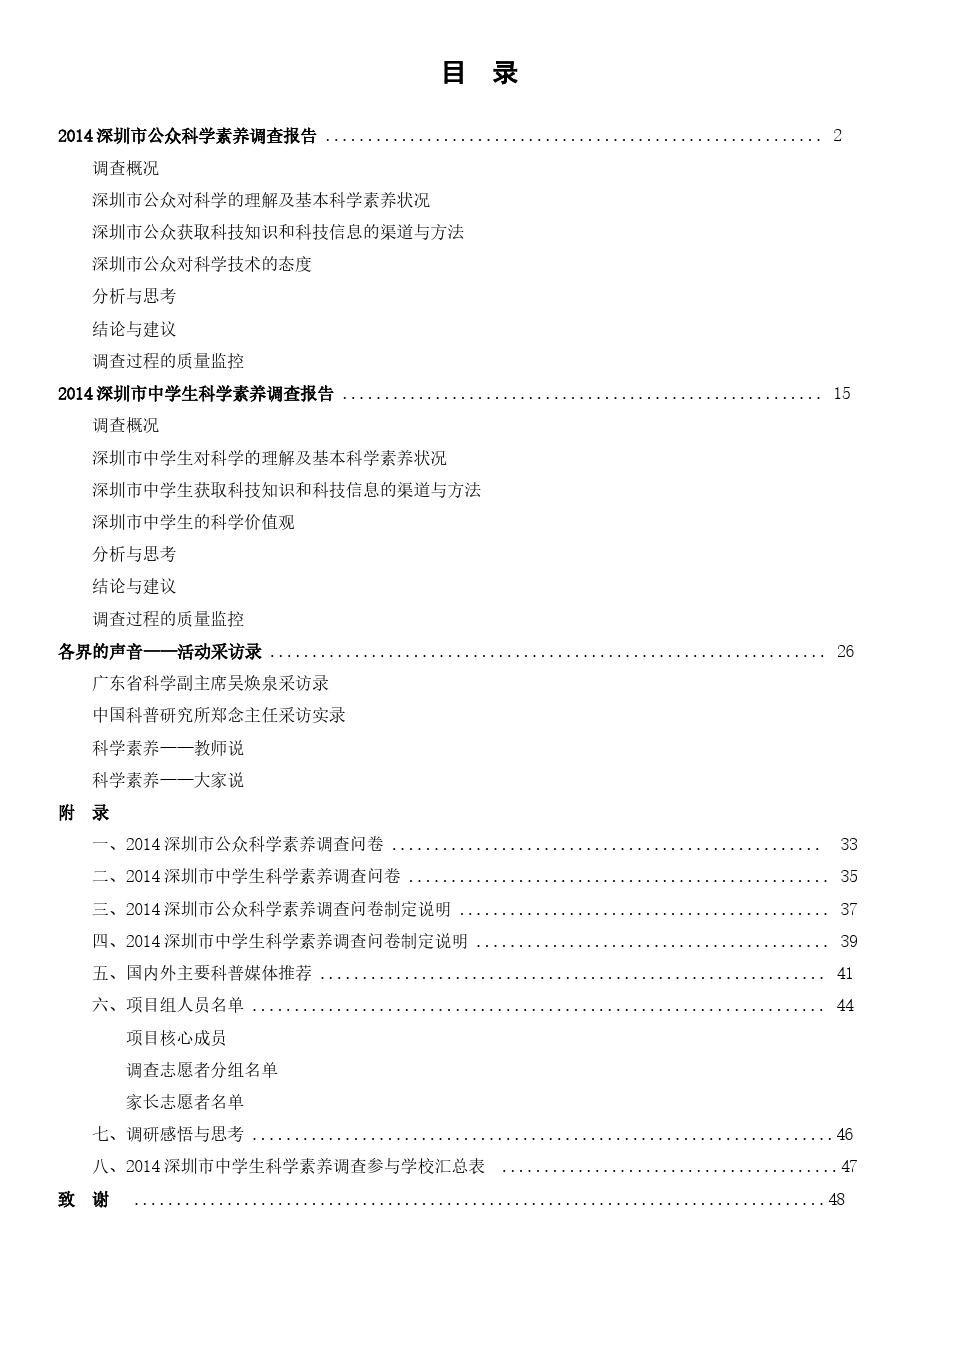 2014深圳市公众和中学生科学素养调查报告(内页)